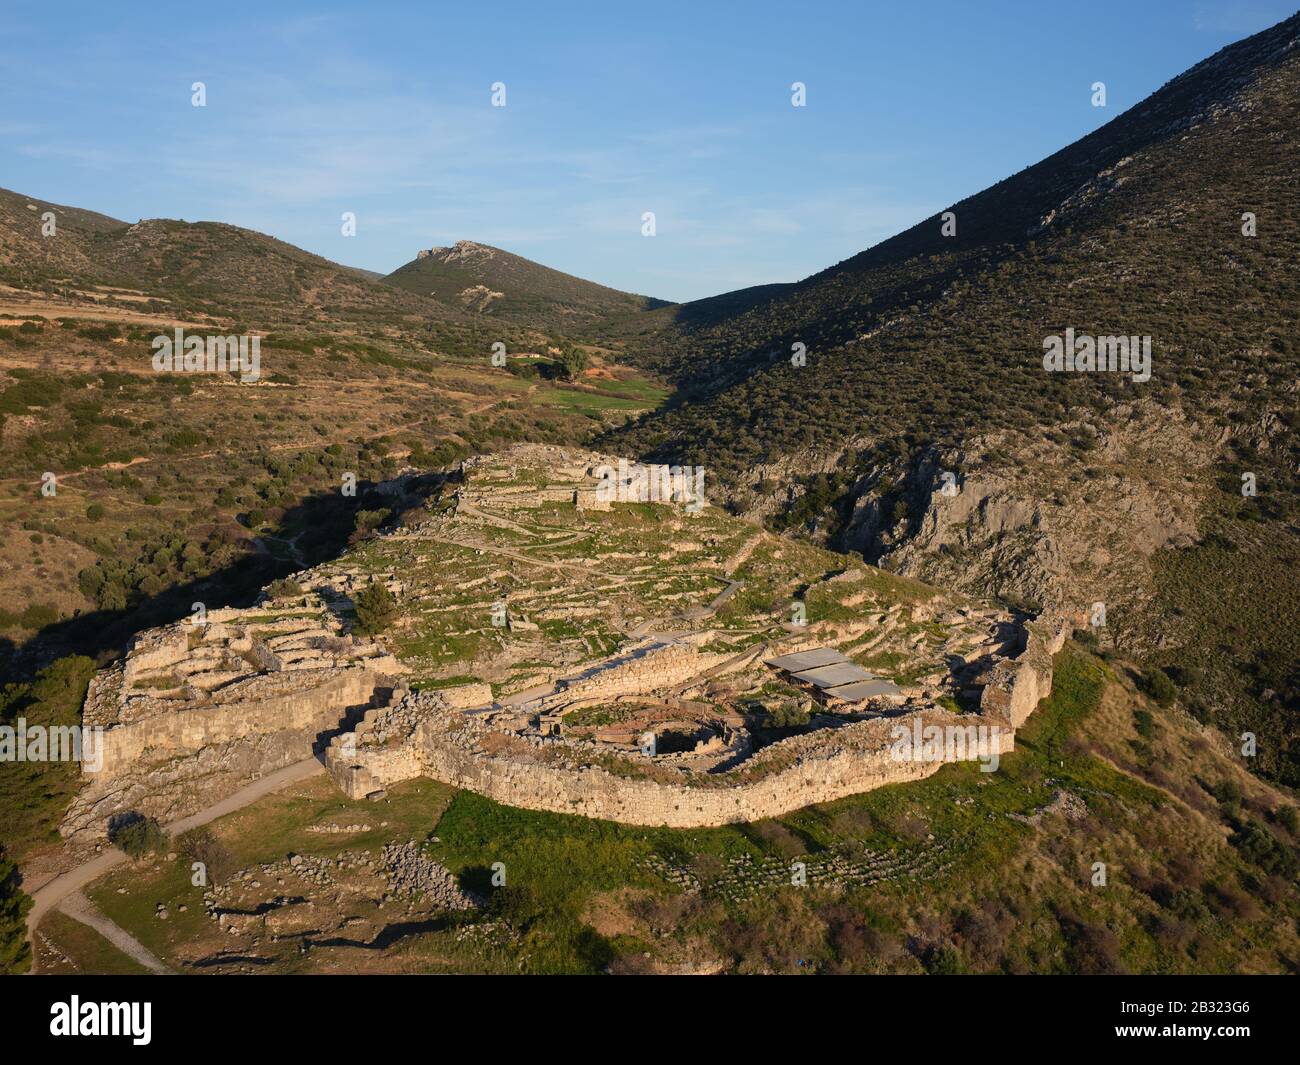 VISTA AÉREA. Sitio arqueológico de Mycenae. Cerca de la ciudad de Mykines, Argolis, Peloponeso, Grecia. Foto de stock